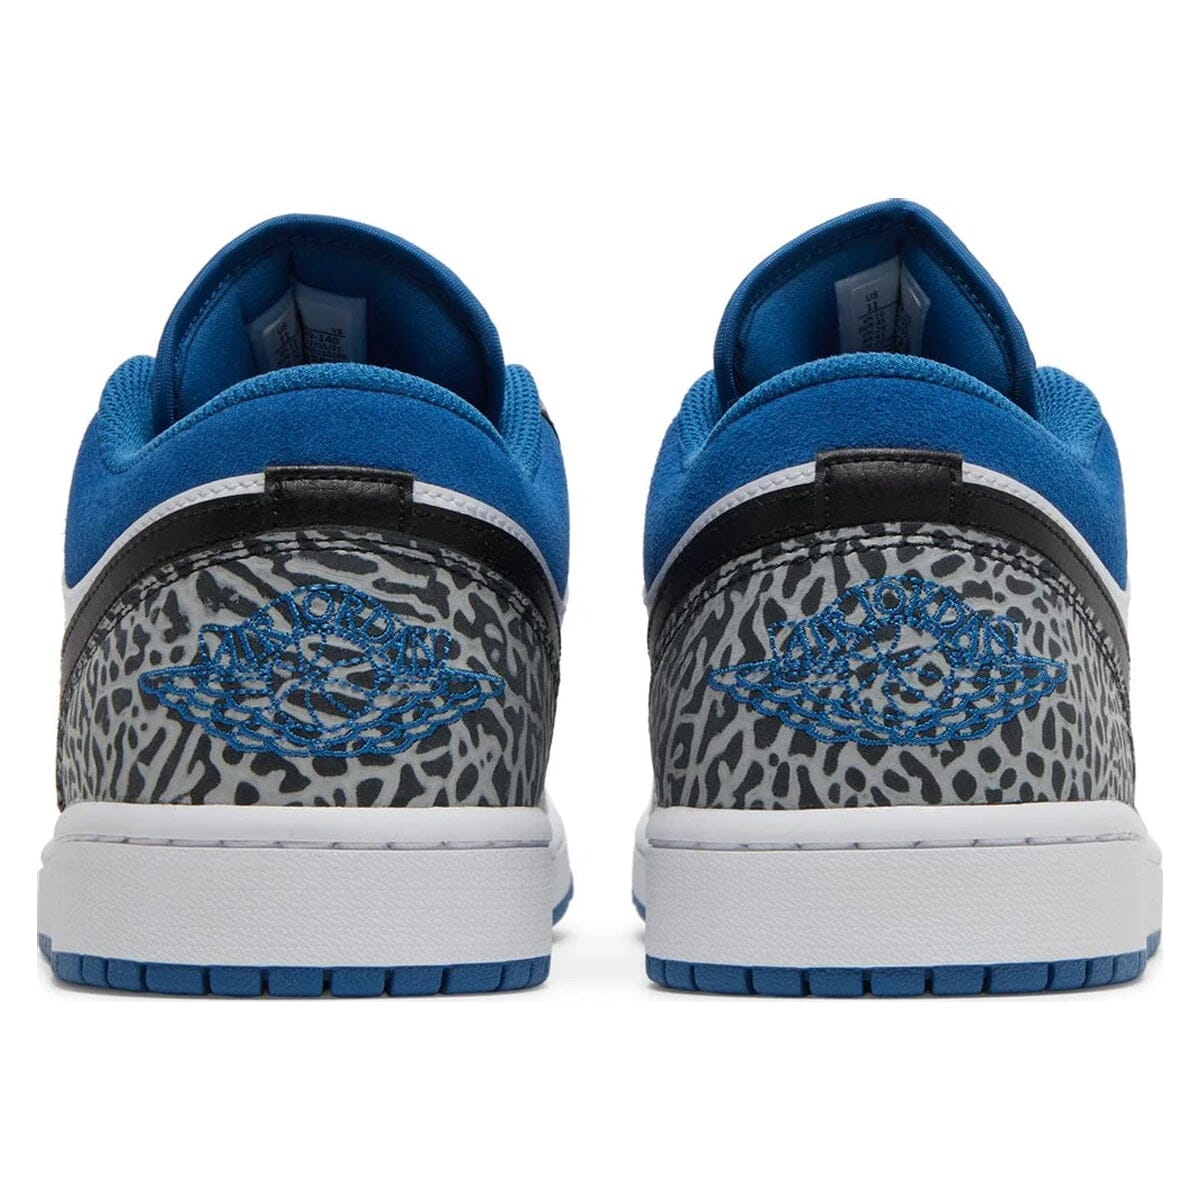 Air Jordan 1 Low True Blue Air Jordan 1 Low Blizz Sneakers 